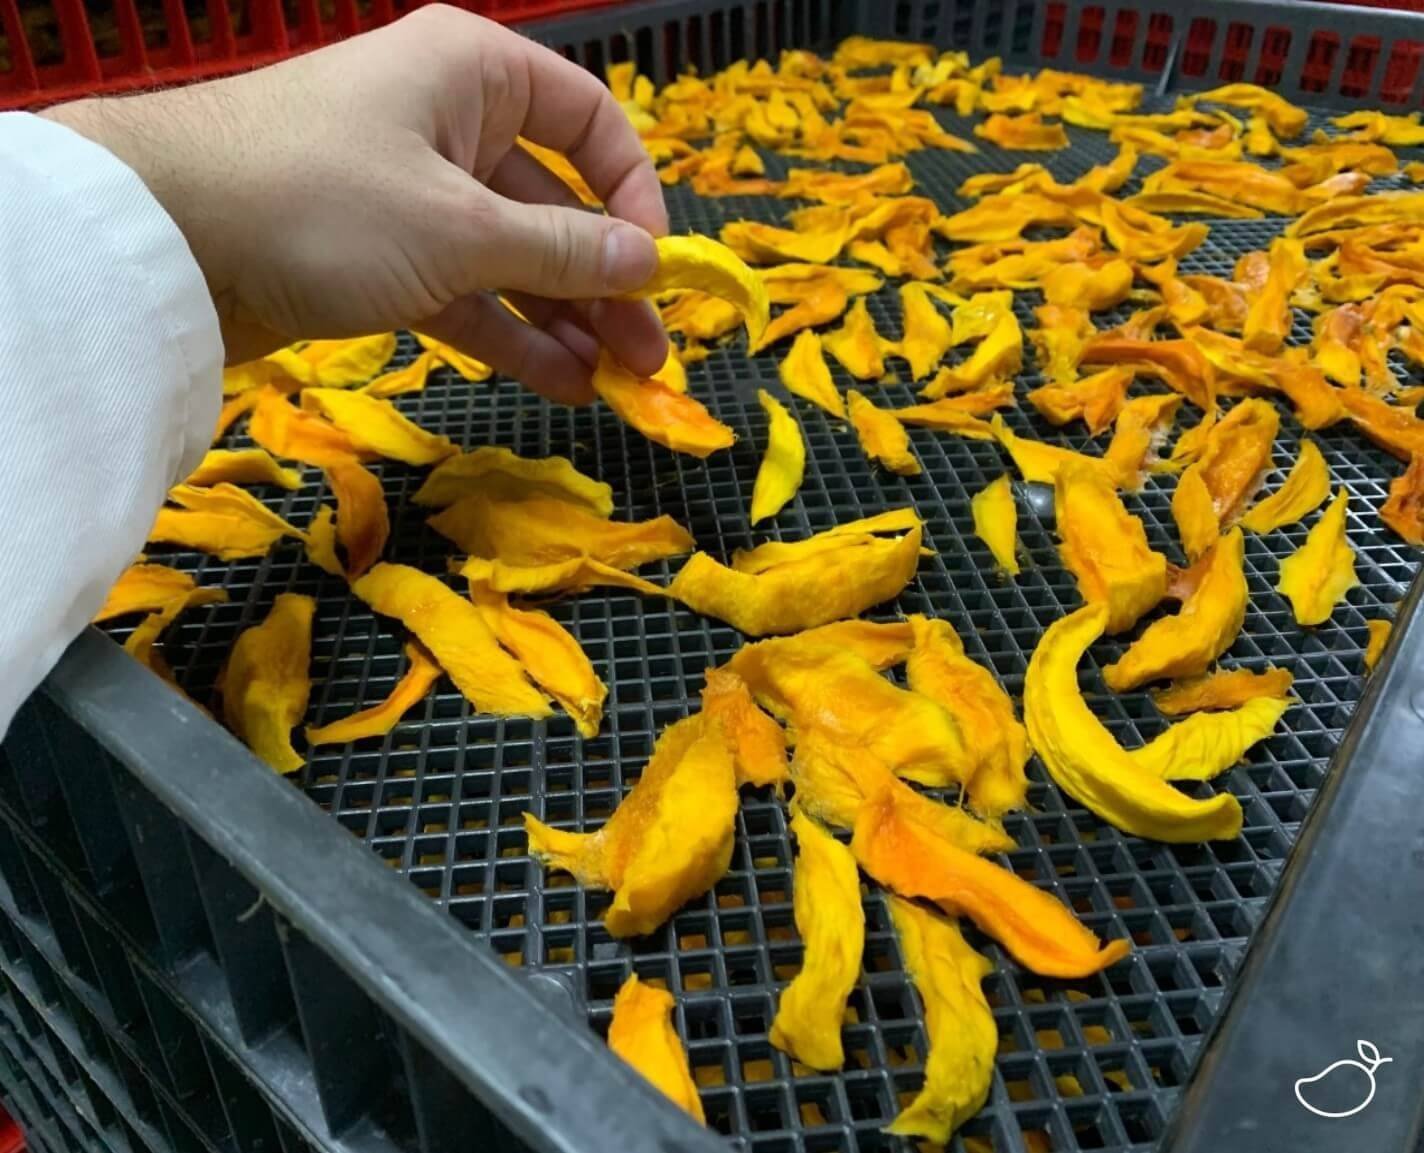 Getrocknete Mango in der Fabrik auf Trockenblech